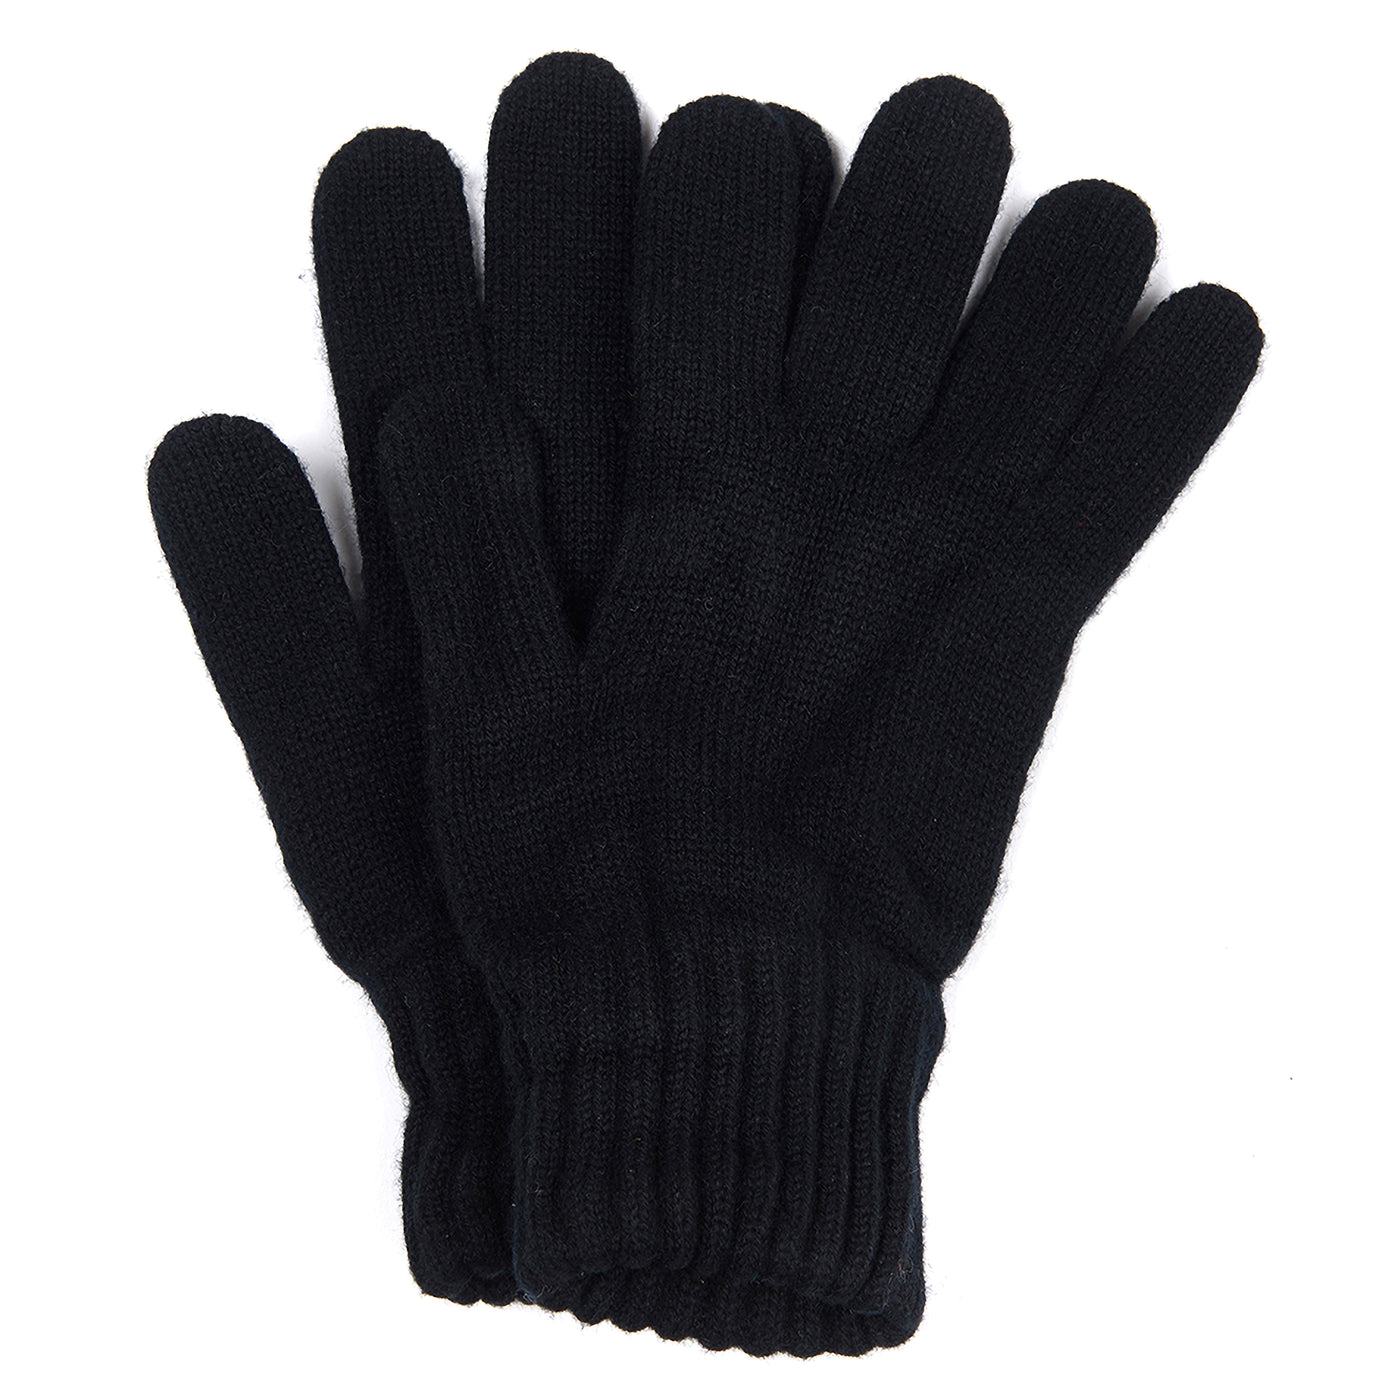 Barbour Lambswool Gloves Black Pair